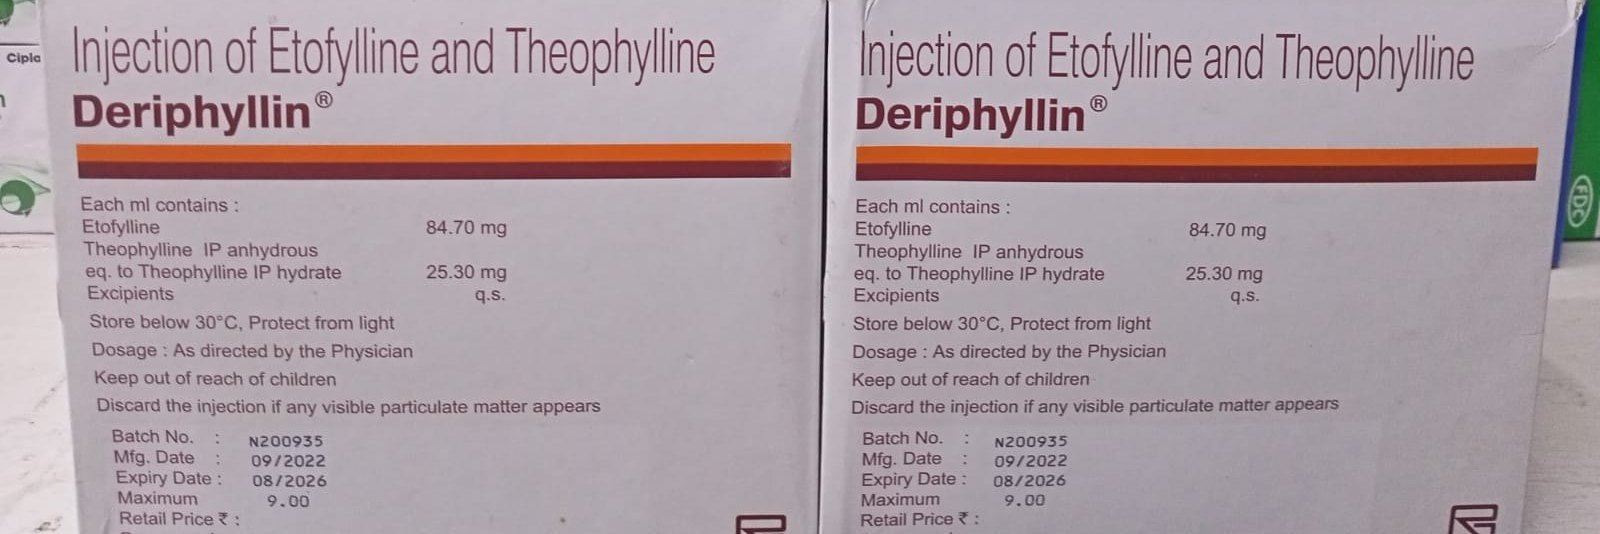 Etofylline And Theophylline Injection